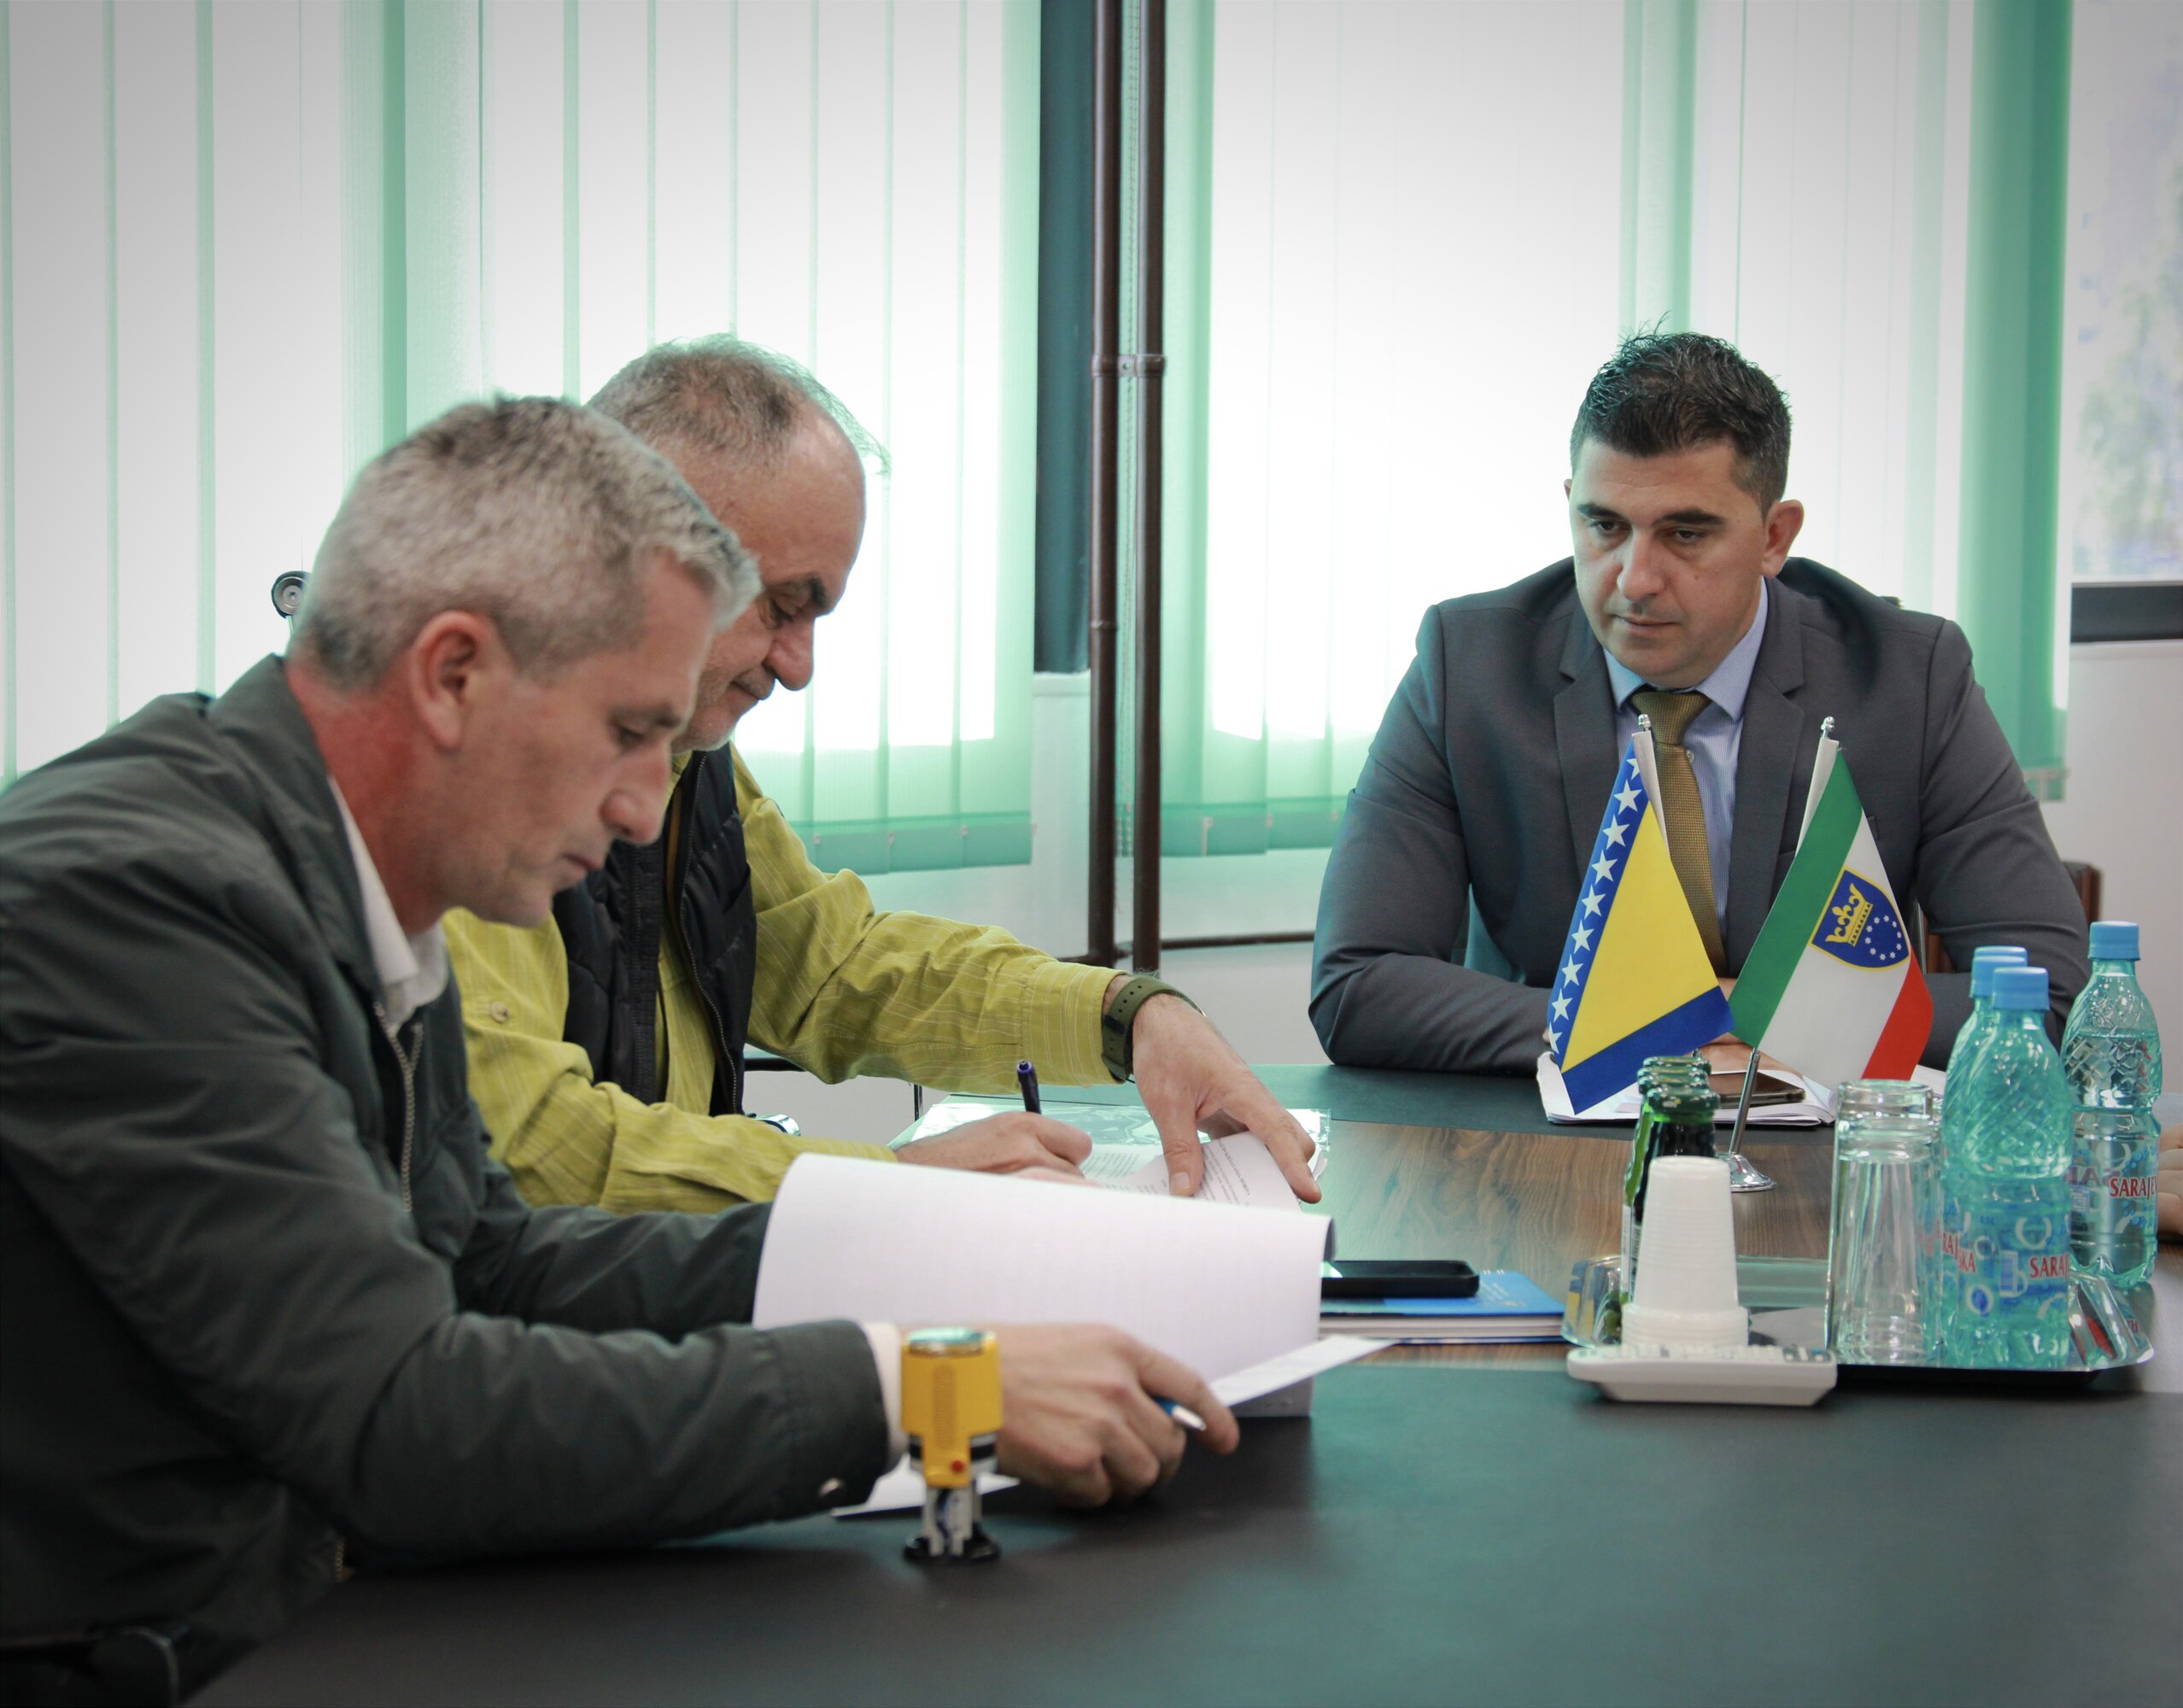 Potpisan ugovor o izvođenju radova na modernizaciji ceste i izgradnji pješačke staze na regionalnoj cesti Nemila-Zenica